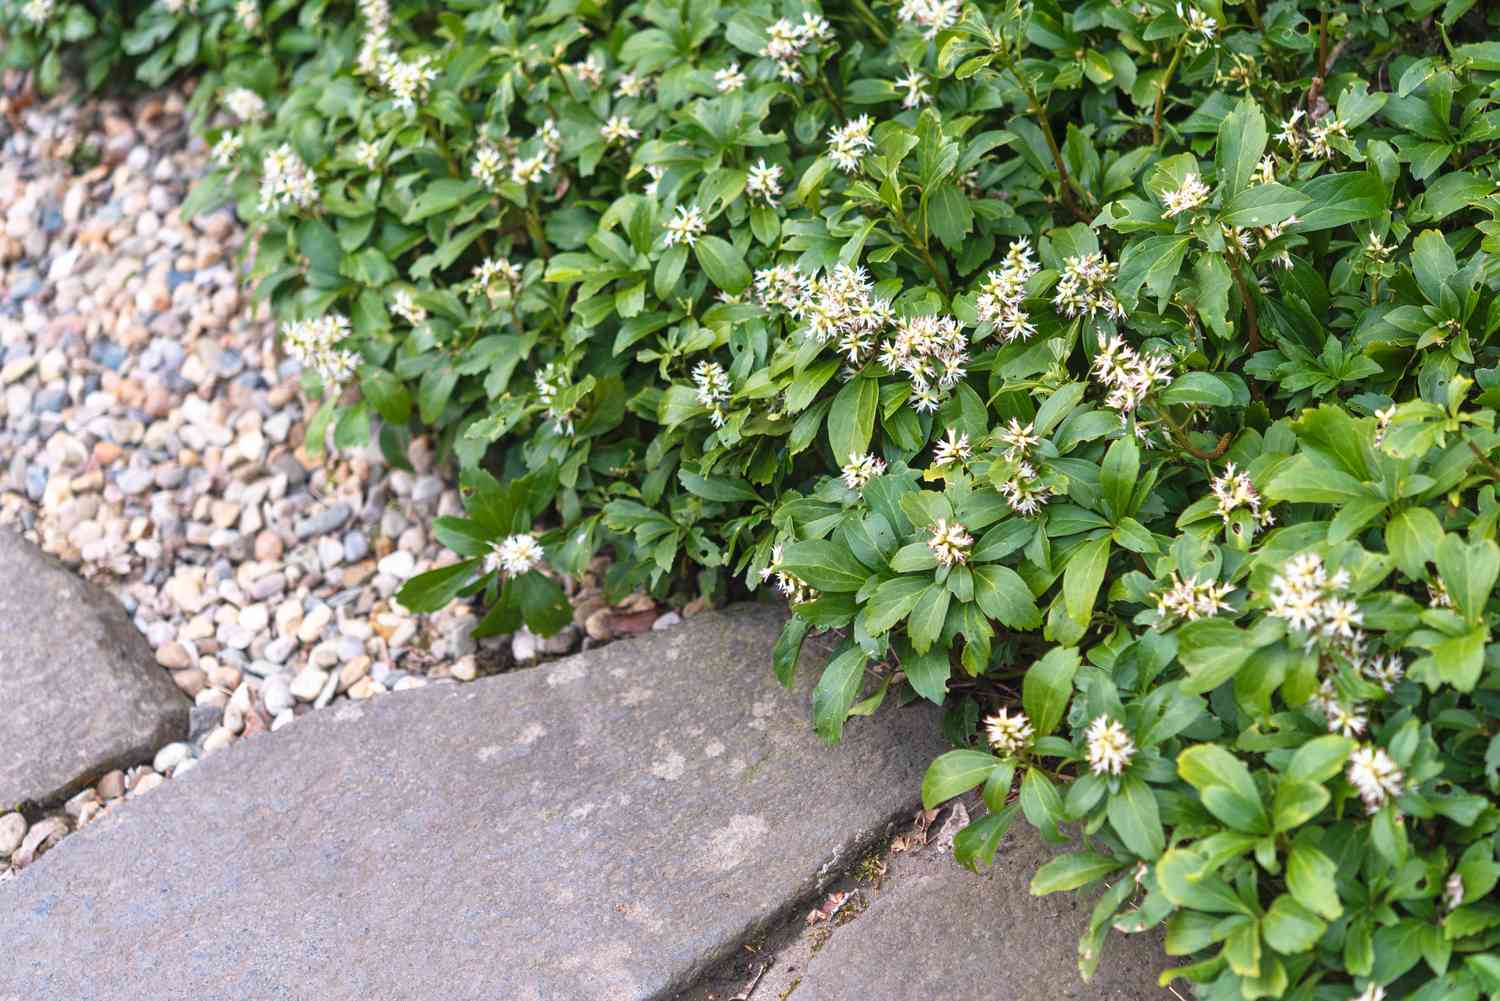 Planta Pachysandra com pequenos cachos de flores brancas e folhas cobrindo o solo próximo à borda da pedra